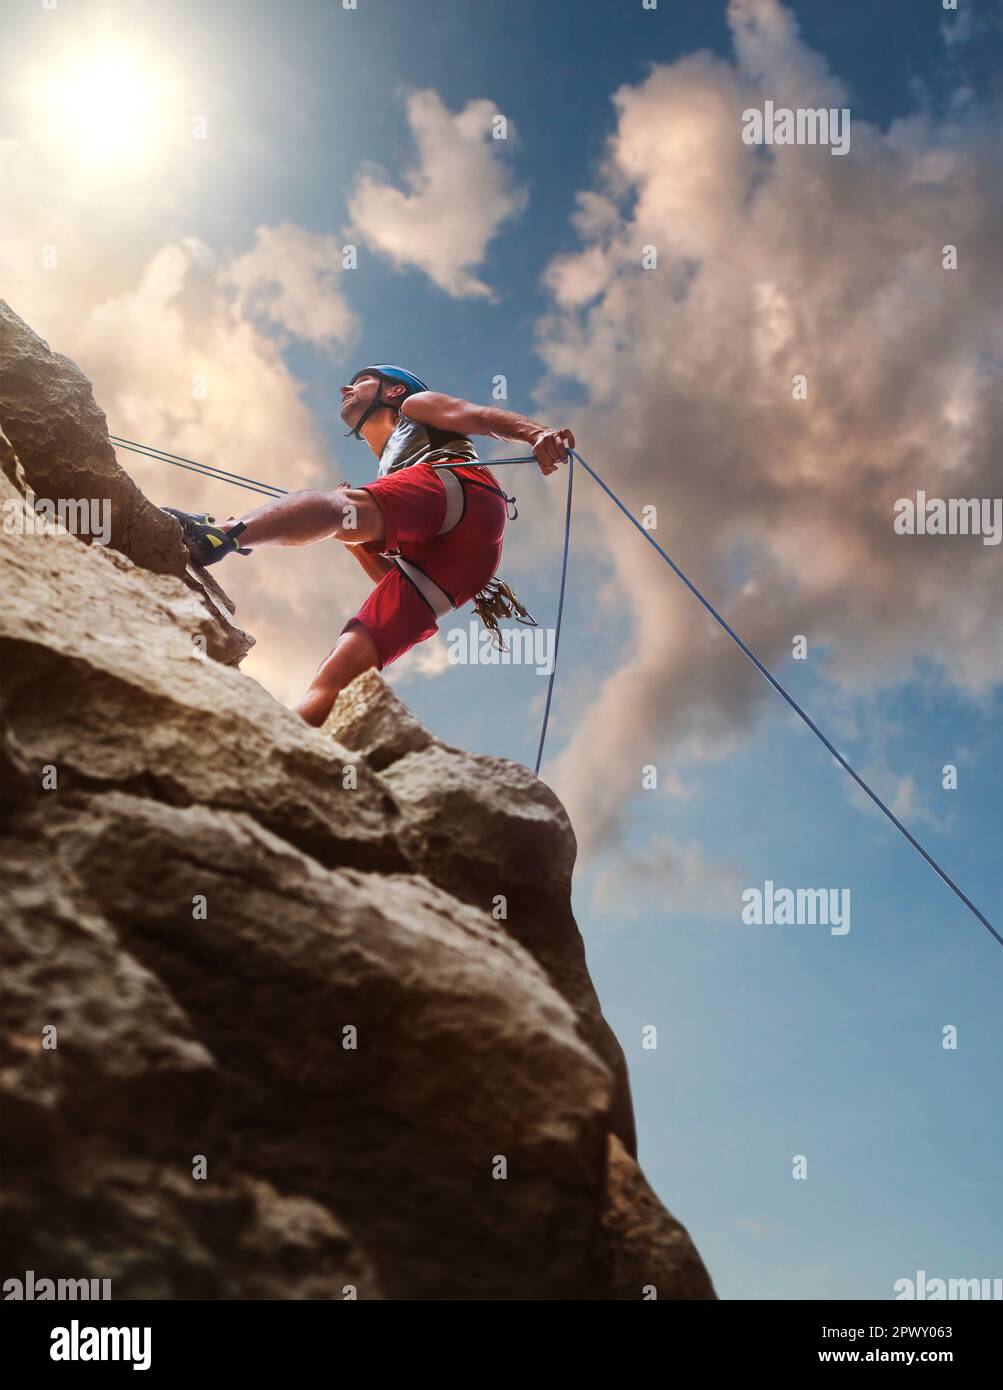 Muskulöser Kletterer Mann in Schutzhelm Abseilen von Felswand mit Seil Belay Gerät und Klettergurt auf Abend Sonnenuntergang Himmel Hintergrund Stockfoto